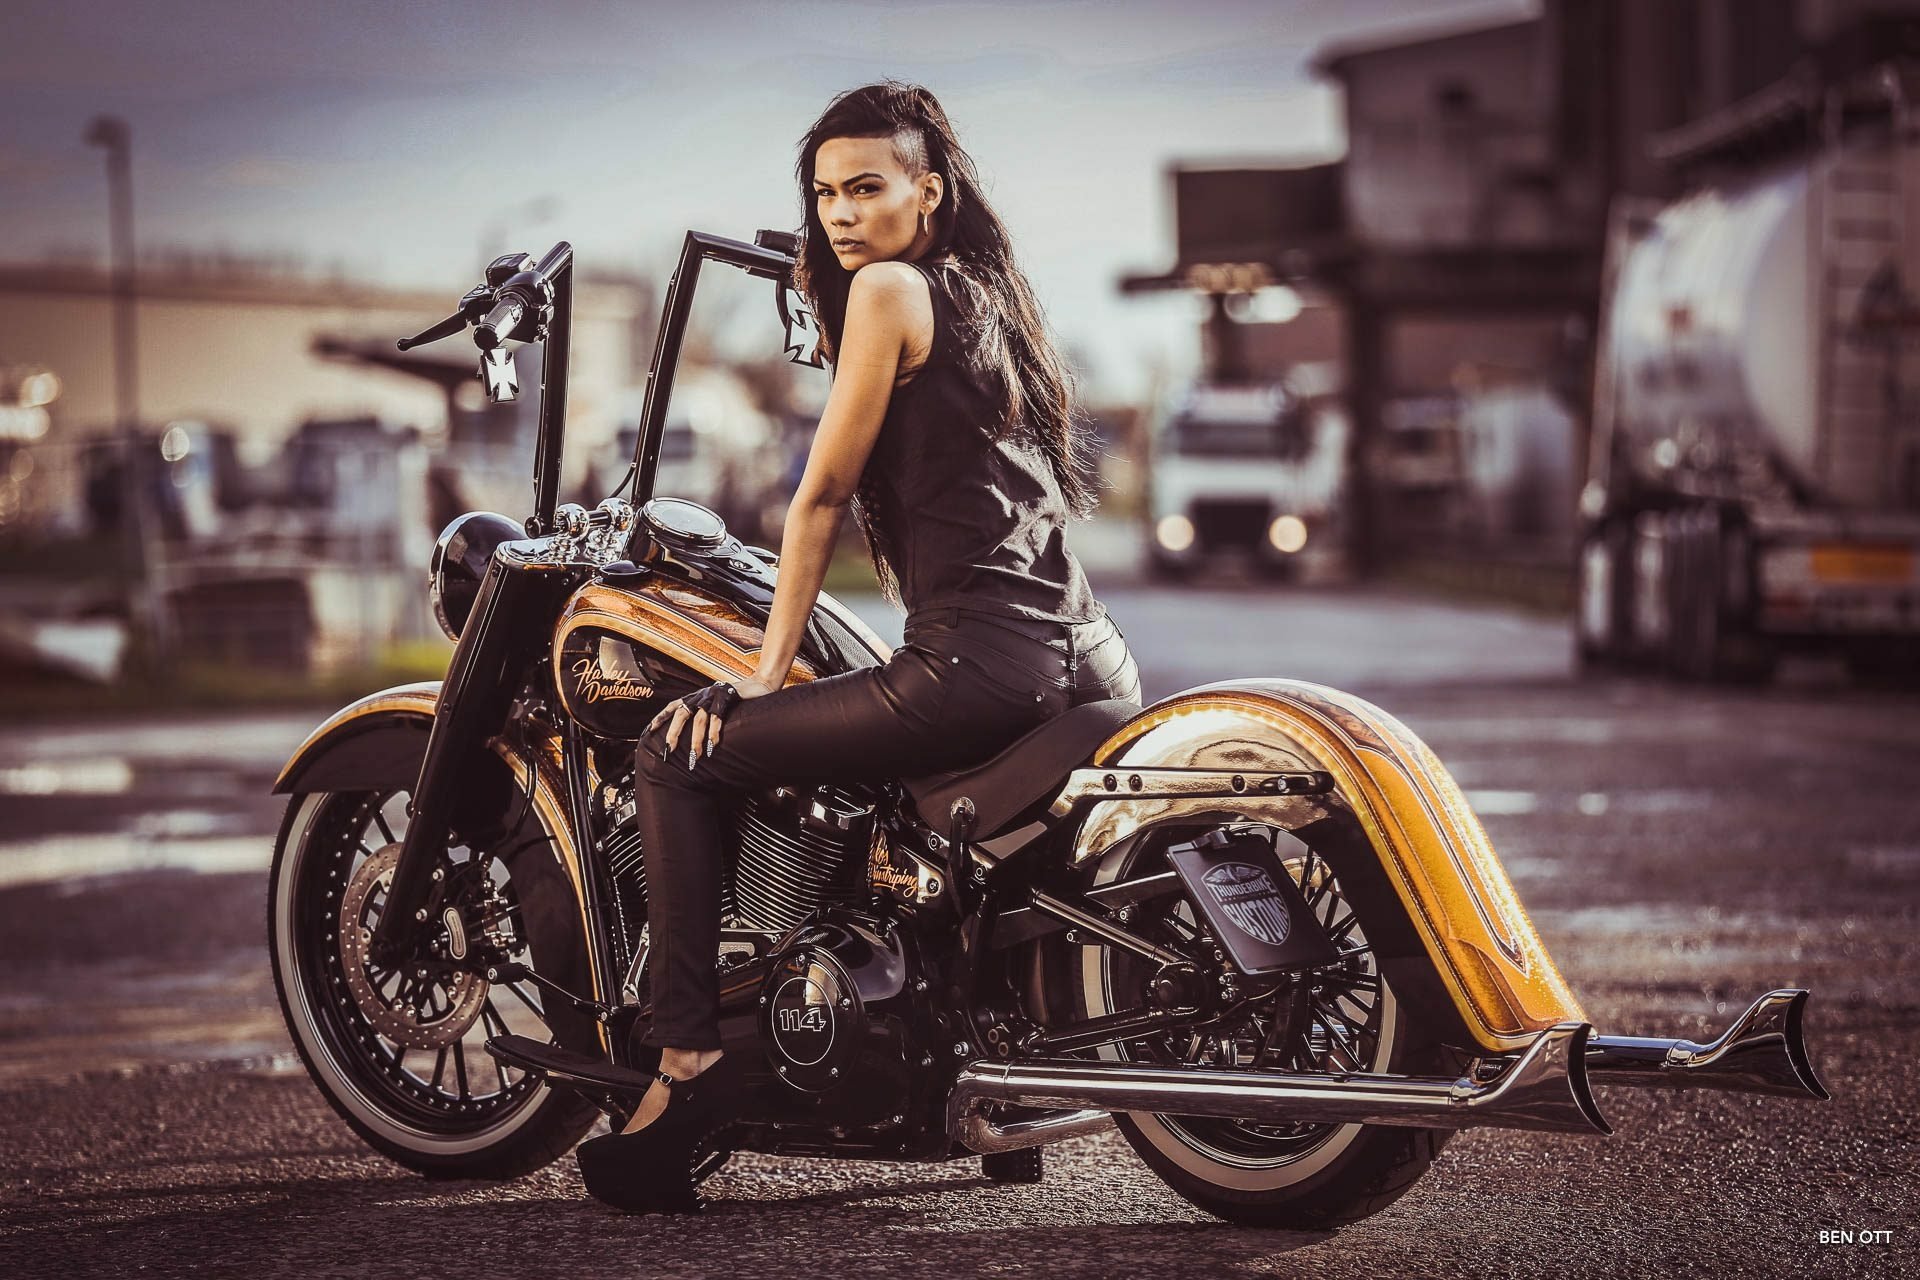 La Candela Customized Thunderbike Harley Davidson Heritage By Ben Ott